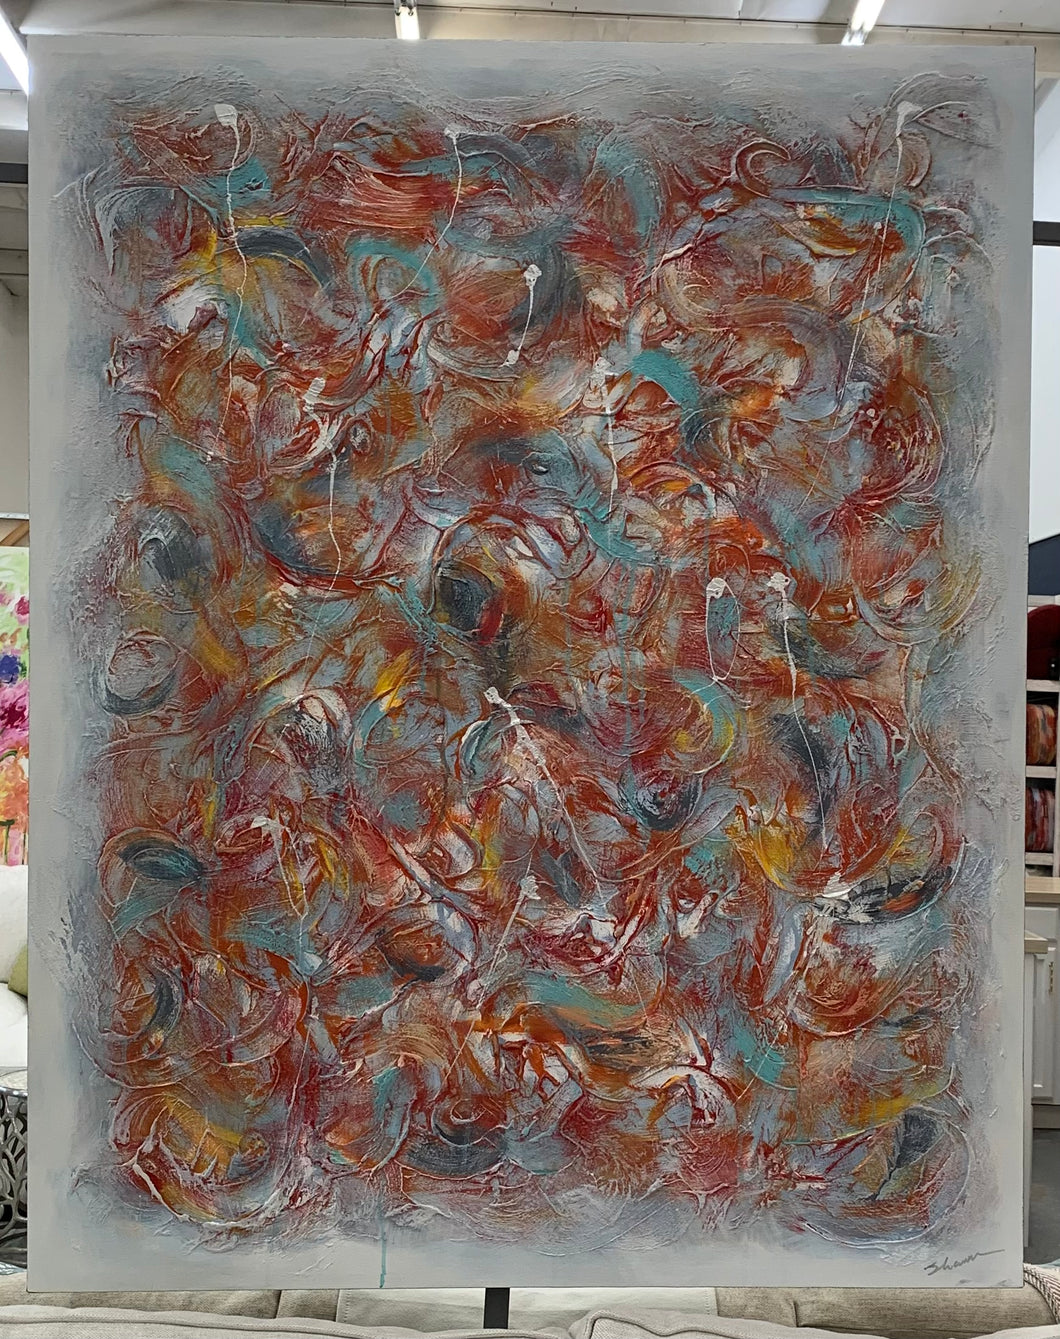 Swarm of Carp Gallery Canvas